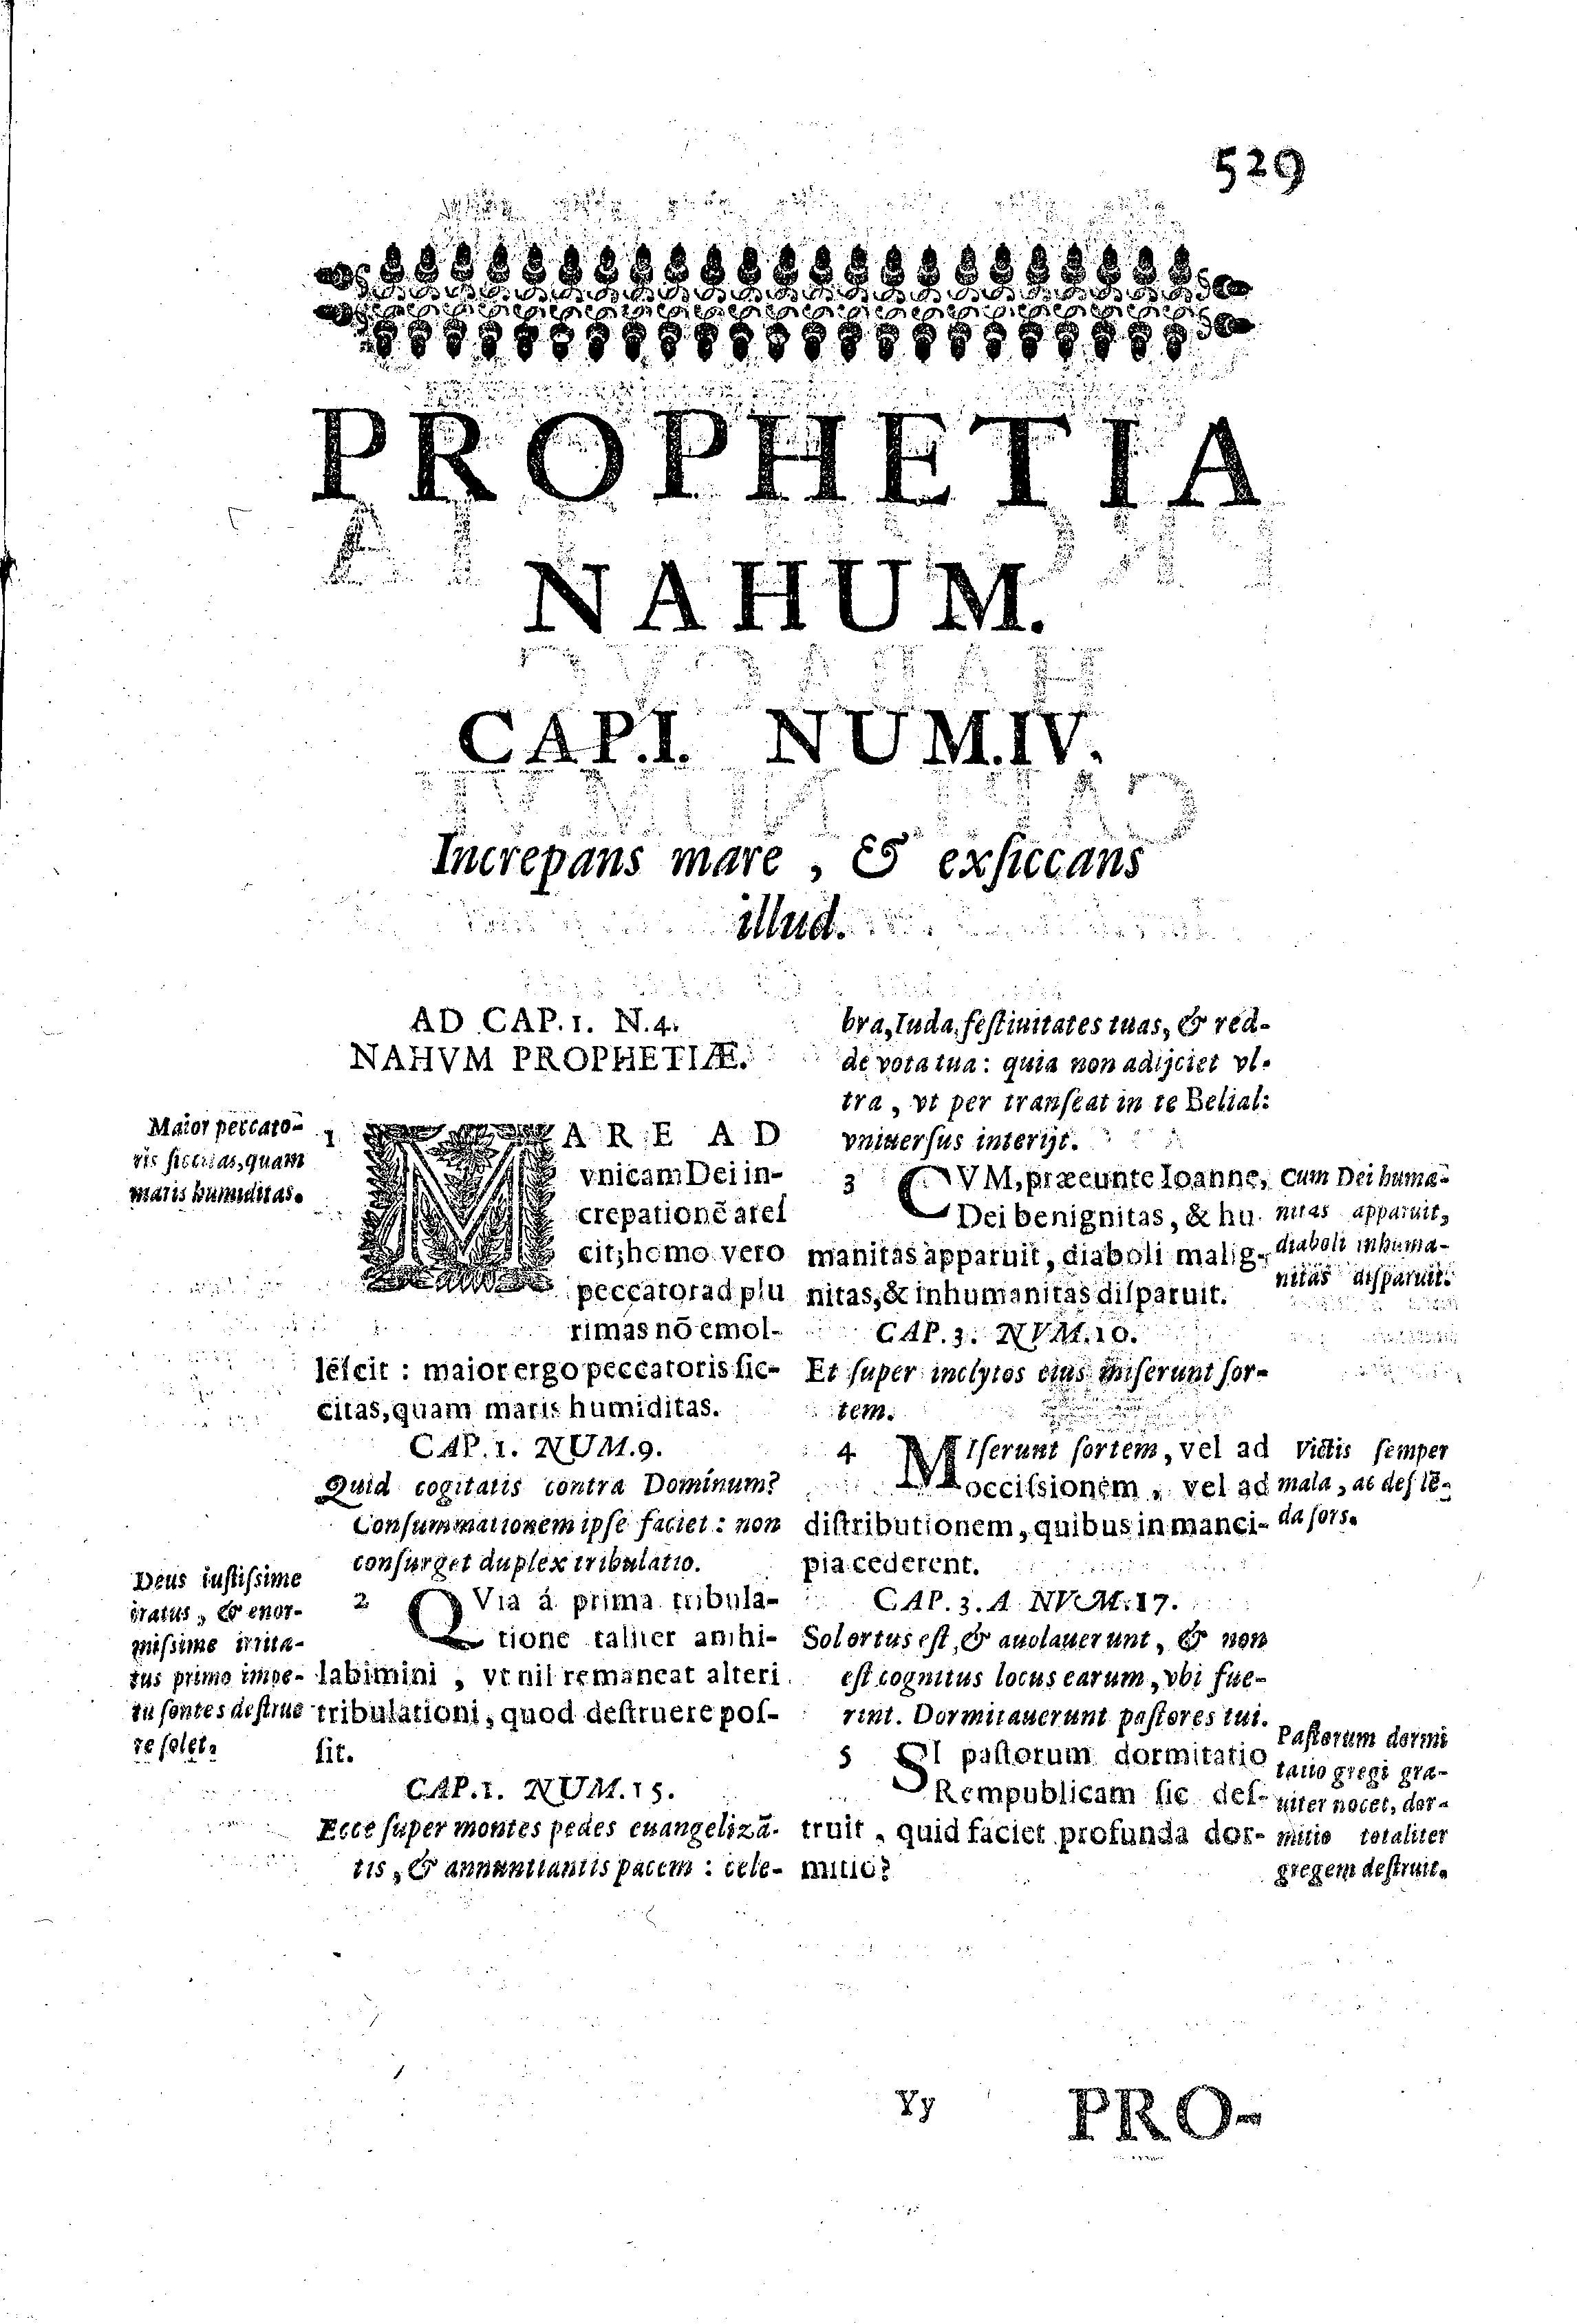 Prophetia Nahum. Cap.I. Num.IV. Increpans mare, et exficcans illud